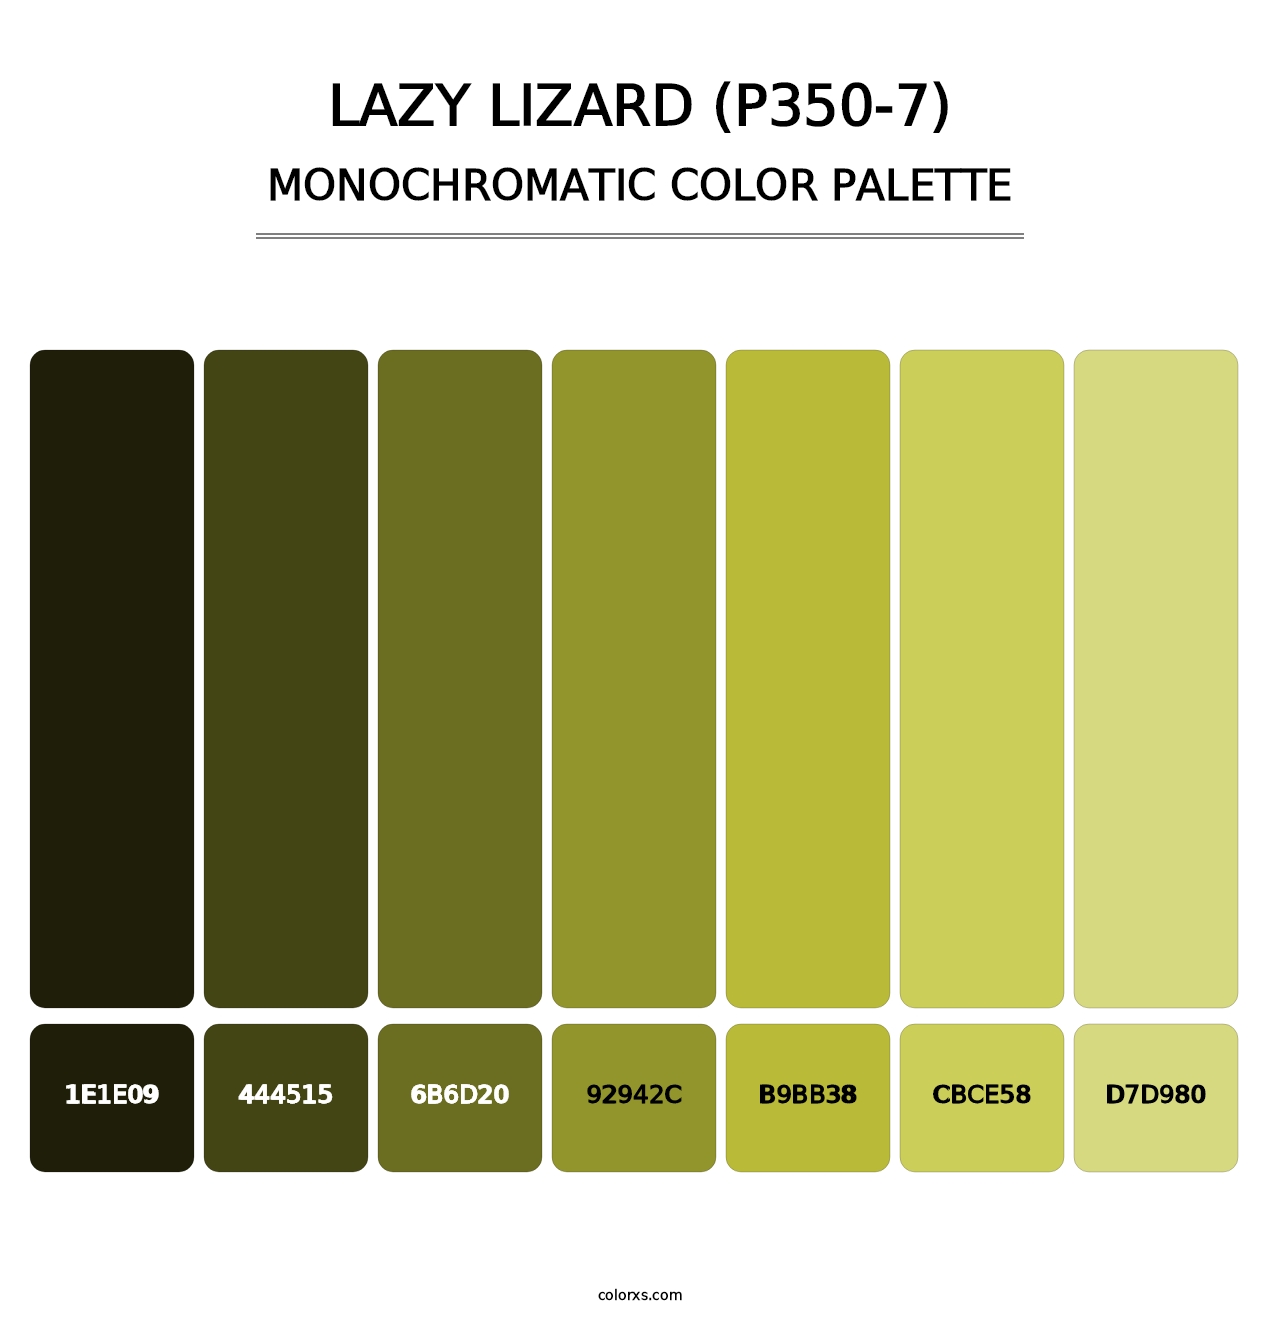 Lazy Lizard (P350-7) - Monochromatic Color Palette